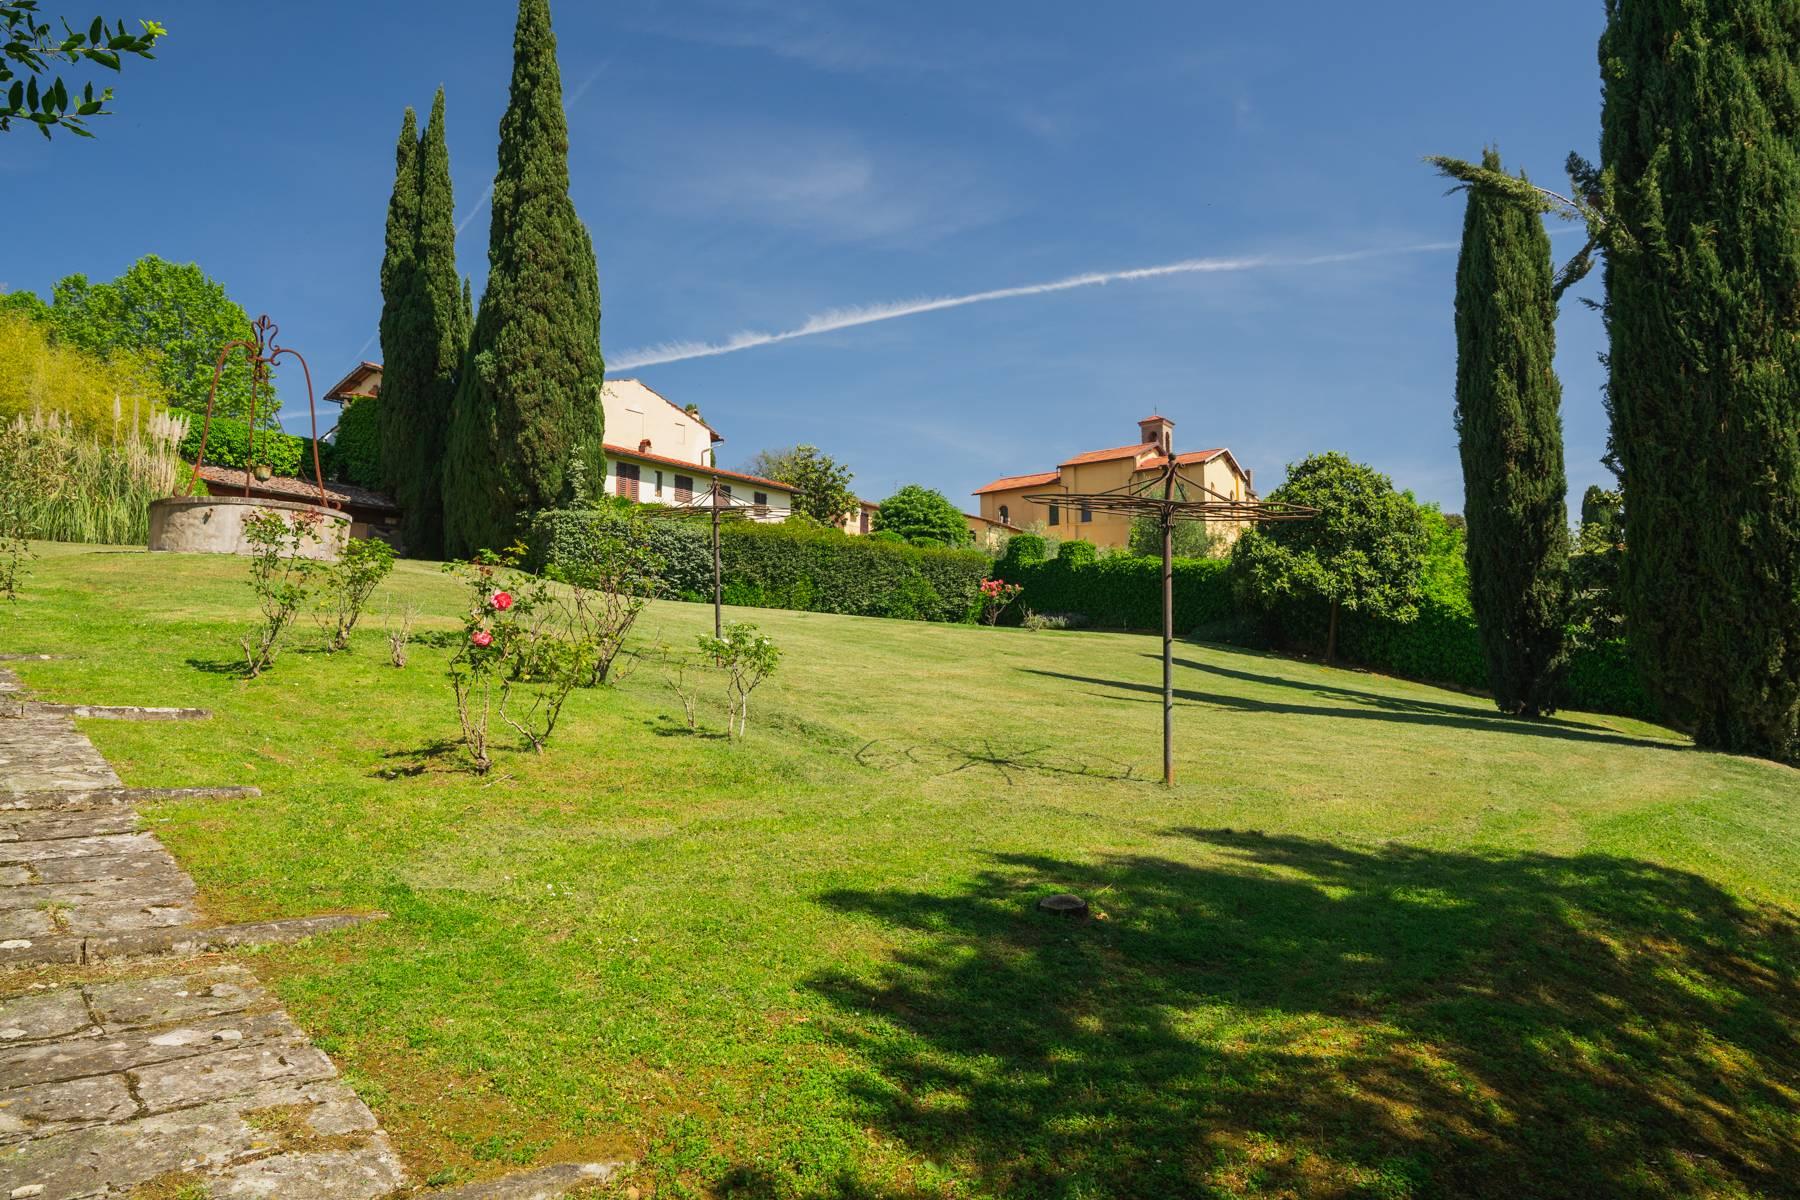 Elegante Villa aus dem 14. Jahrhundert mit einem Hektar Park in Florenz - 42